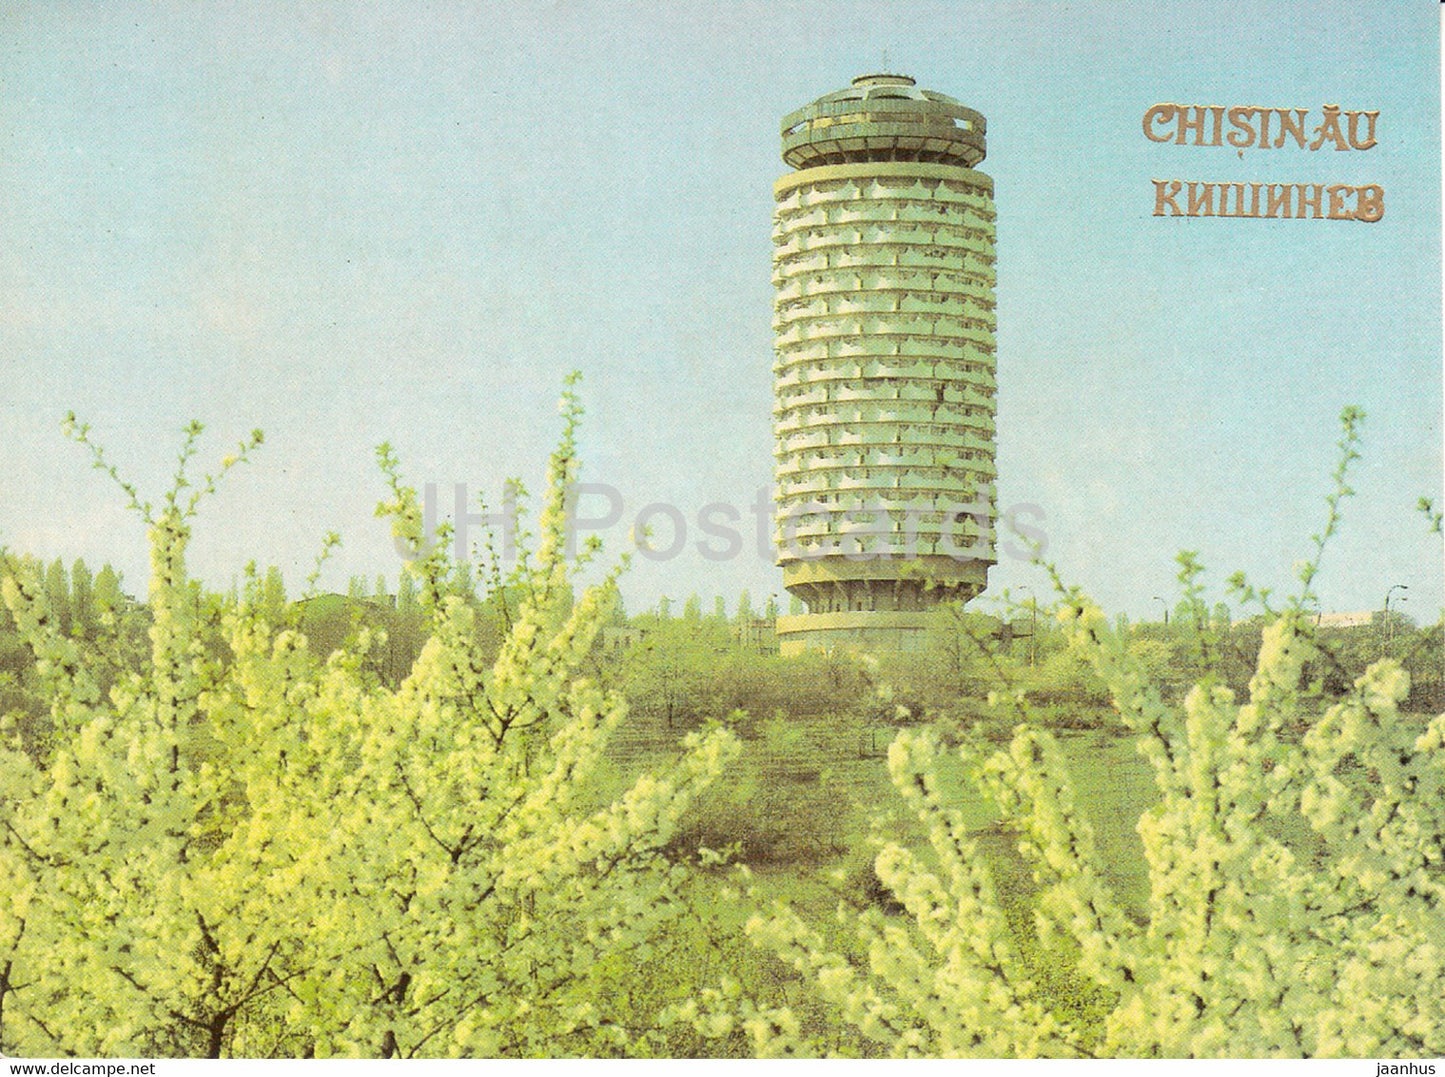 Chisinau - Kishinev - Residential house - 1989 - Moldova USSR - unused - JH Postcards